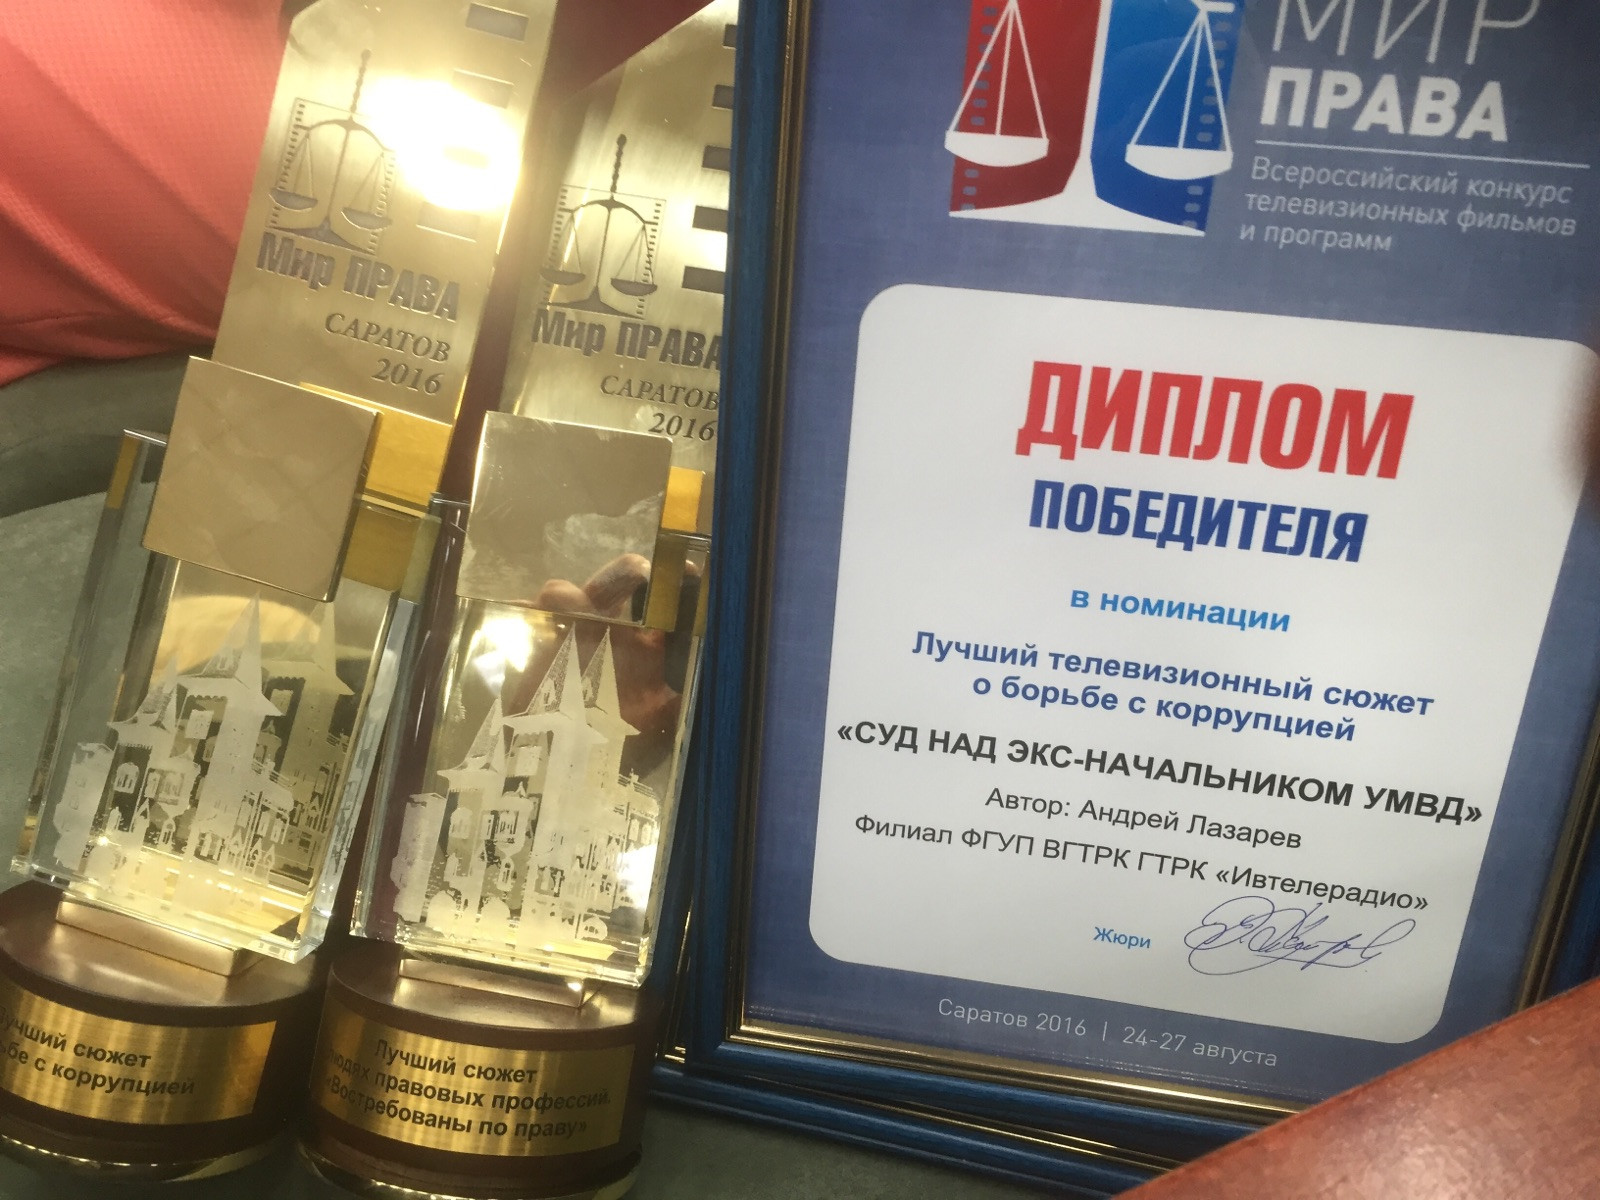 Журналисты ГТРК "Ивтелерадио" победили на Всероссийском фестивале "Мир права"